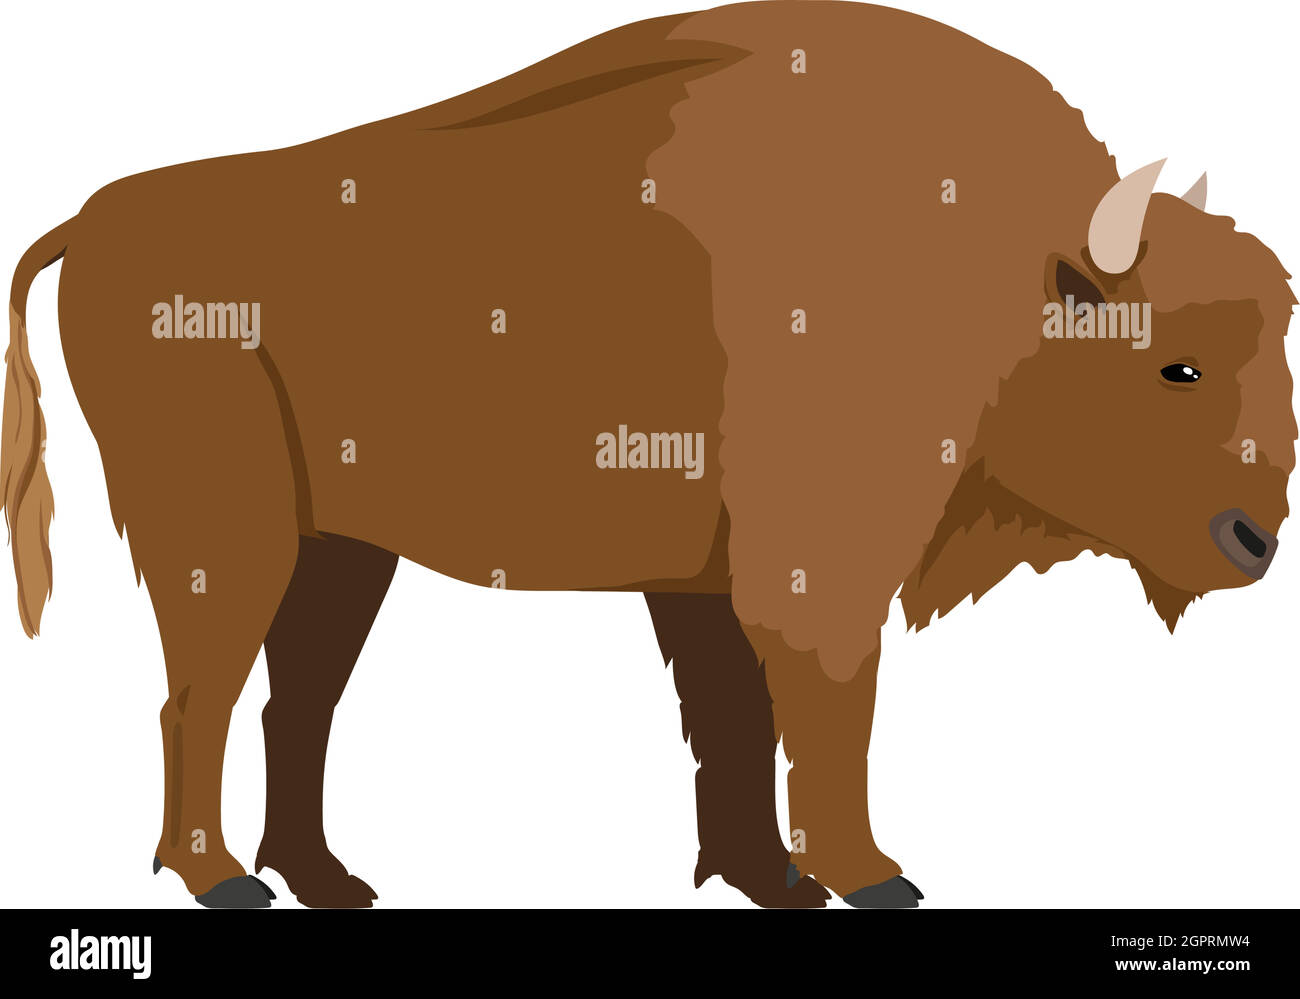 Bisonte bonasus - Bison europeo - Hombre - Vista lateral - Vector plano Ilustración del Vector